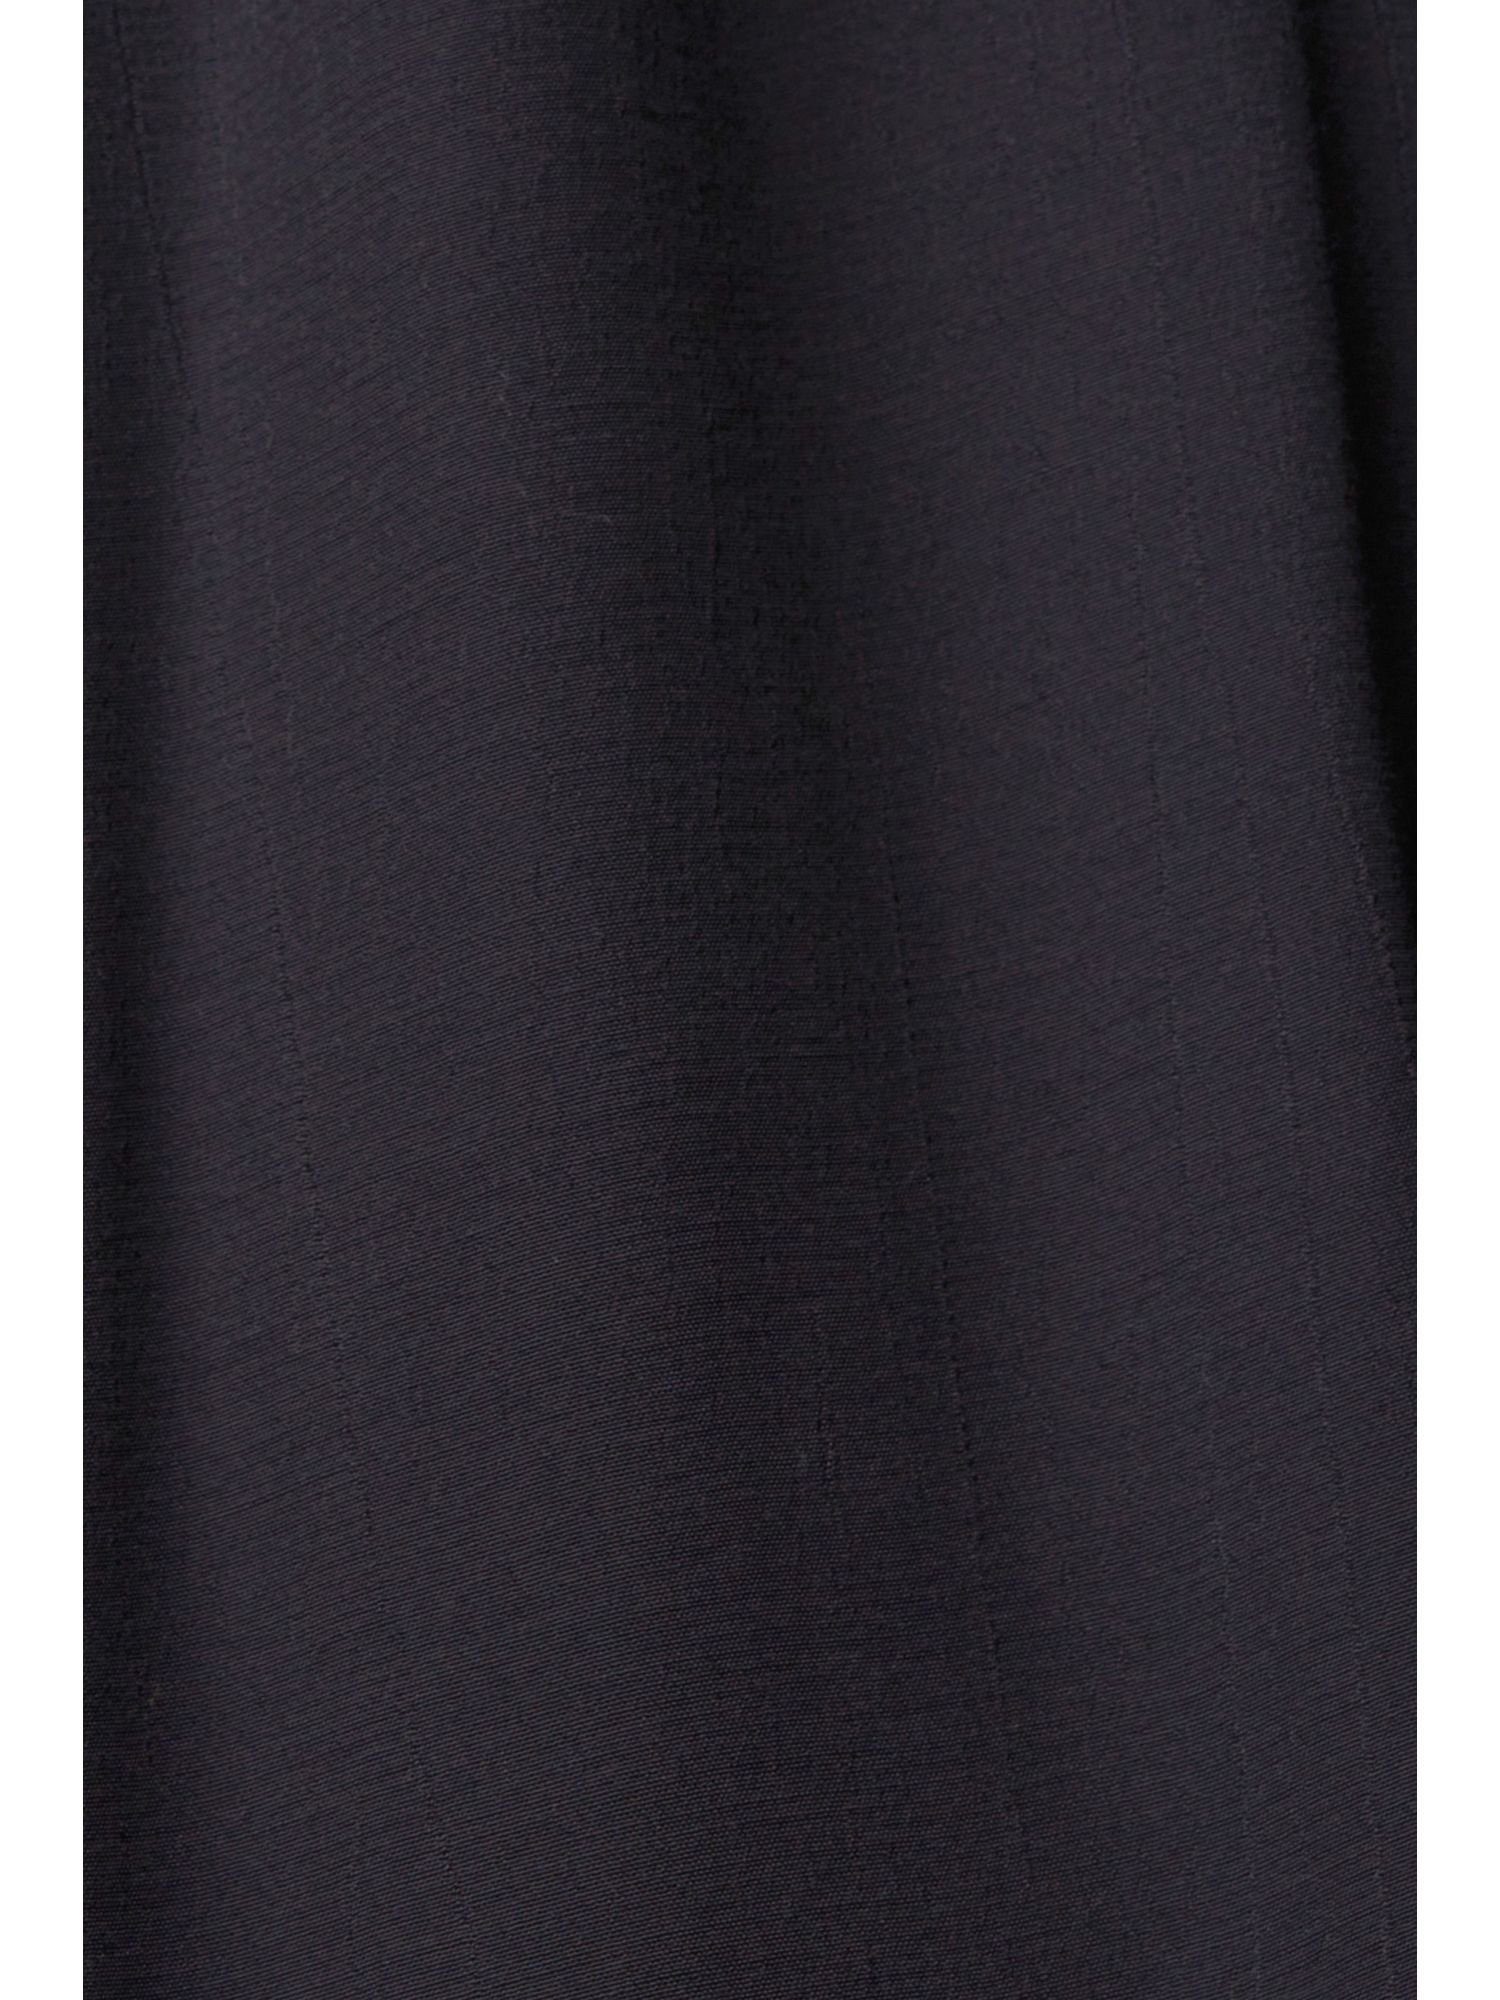 Esprit BLACK by Minikleid Kleid edc Spitzendetails mit